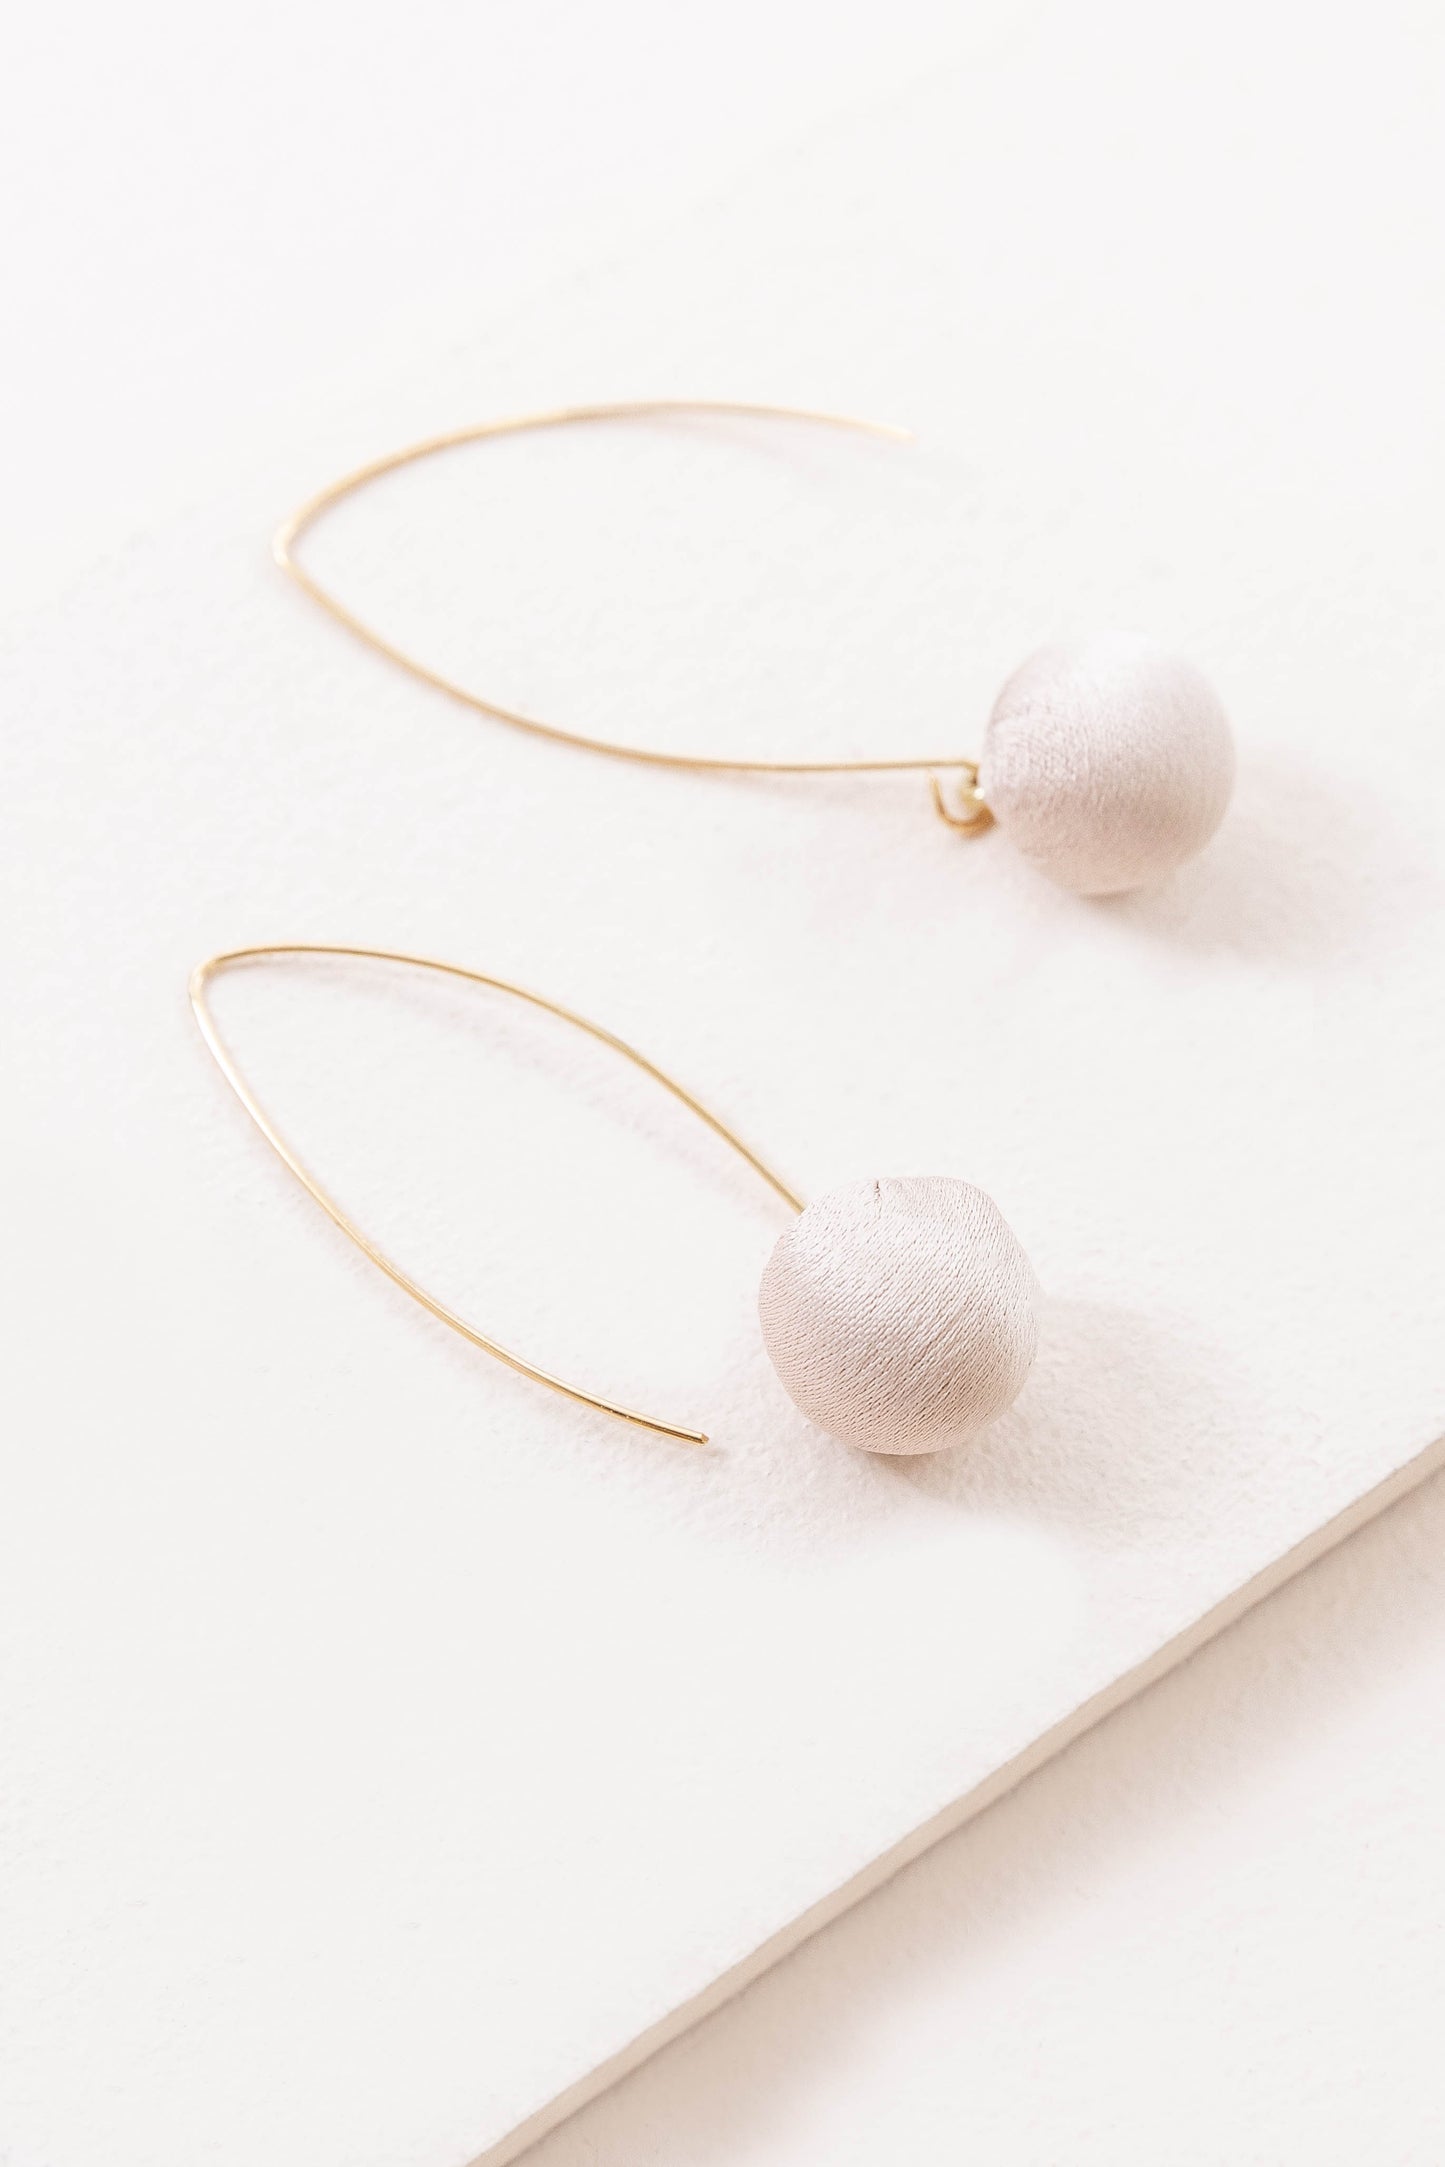 Makena Threader Earrings | Tan